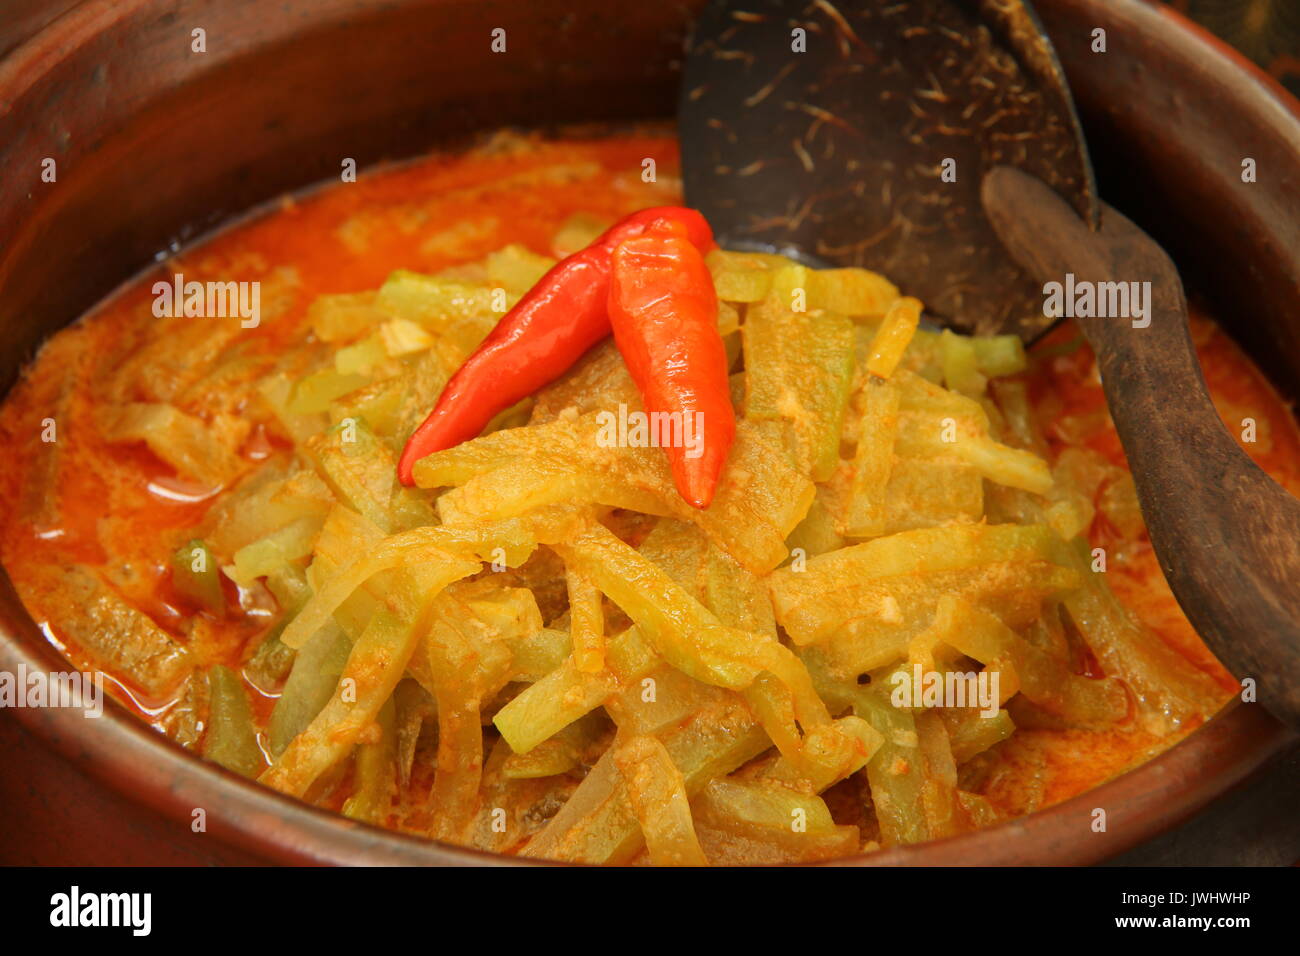 Sambal Goreng Labu Siam. Javanisch würzige Soße der Chayote Squash. In der traditionellen Tontopf mit Kokosnuss serviert - shell Schöpfkelle. Stockfoto